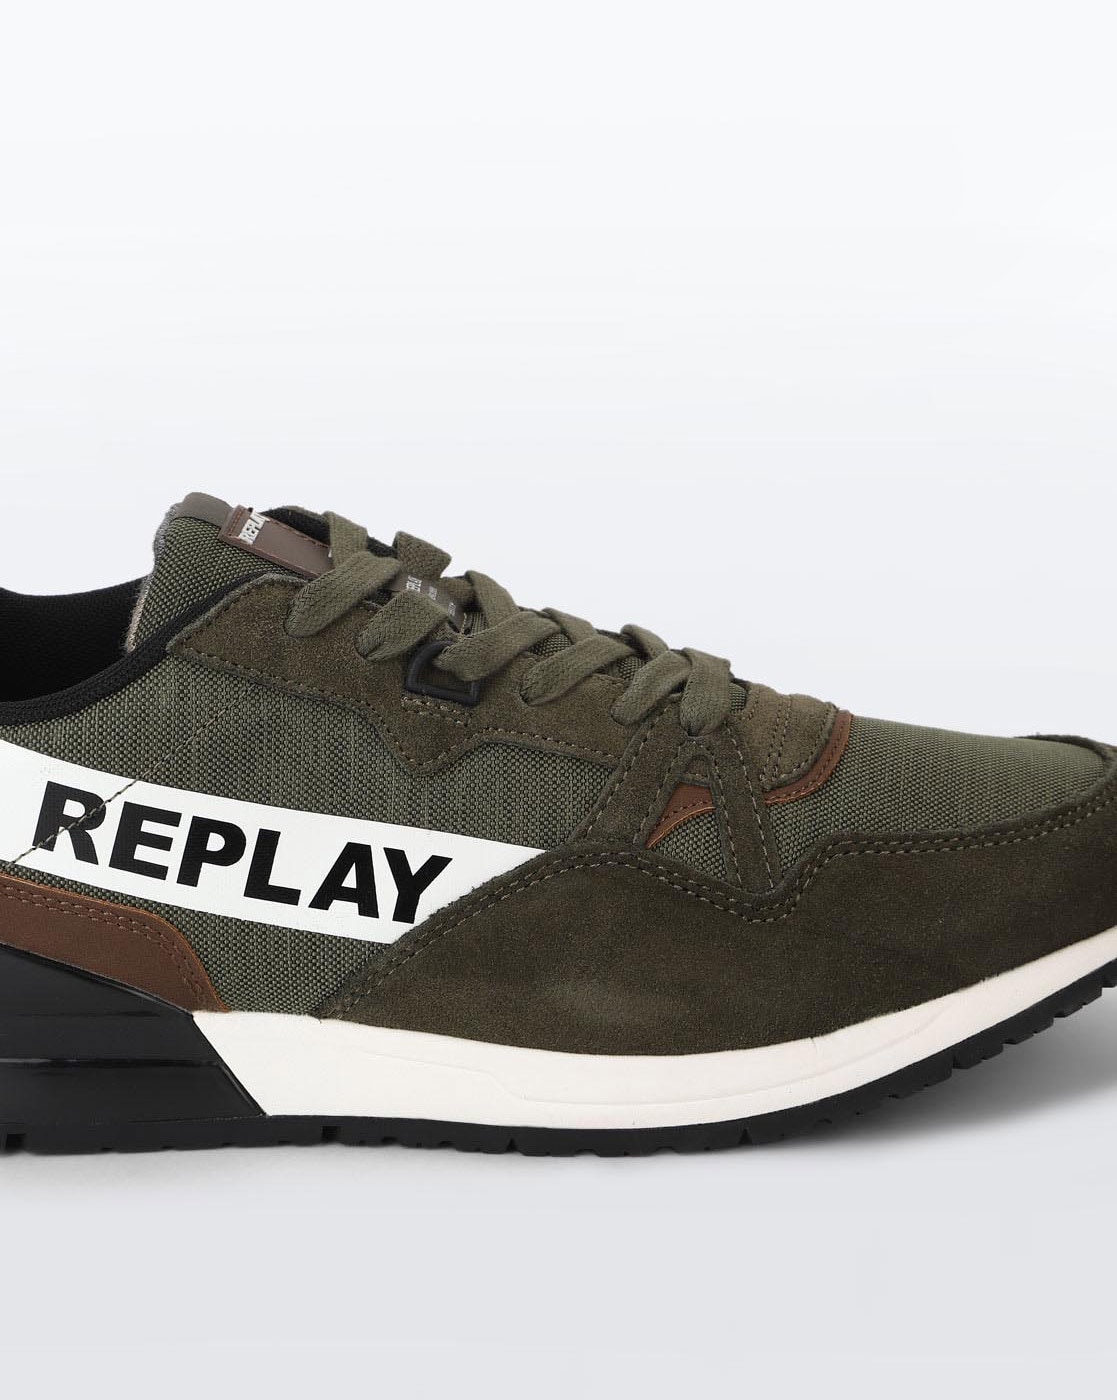 REPLAY, Military green Men's Sneakers